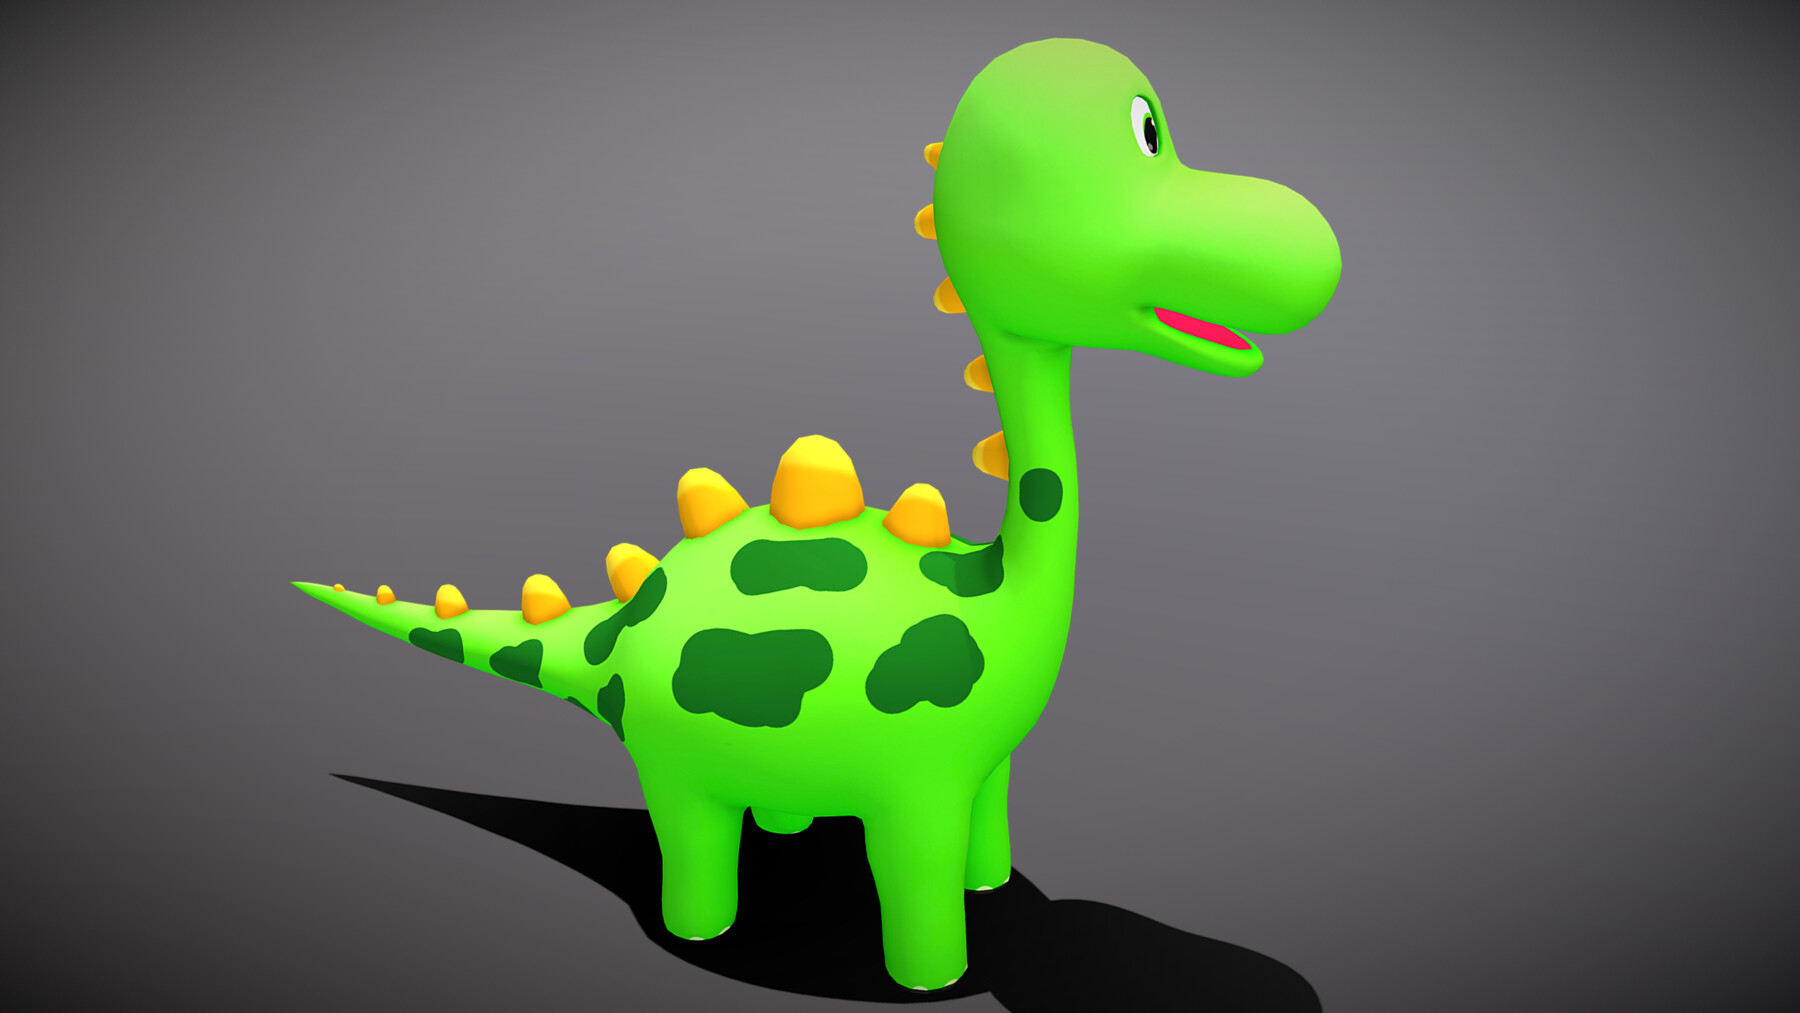 ArtStation - Cartoon Stegosaurus | Game Assets